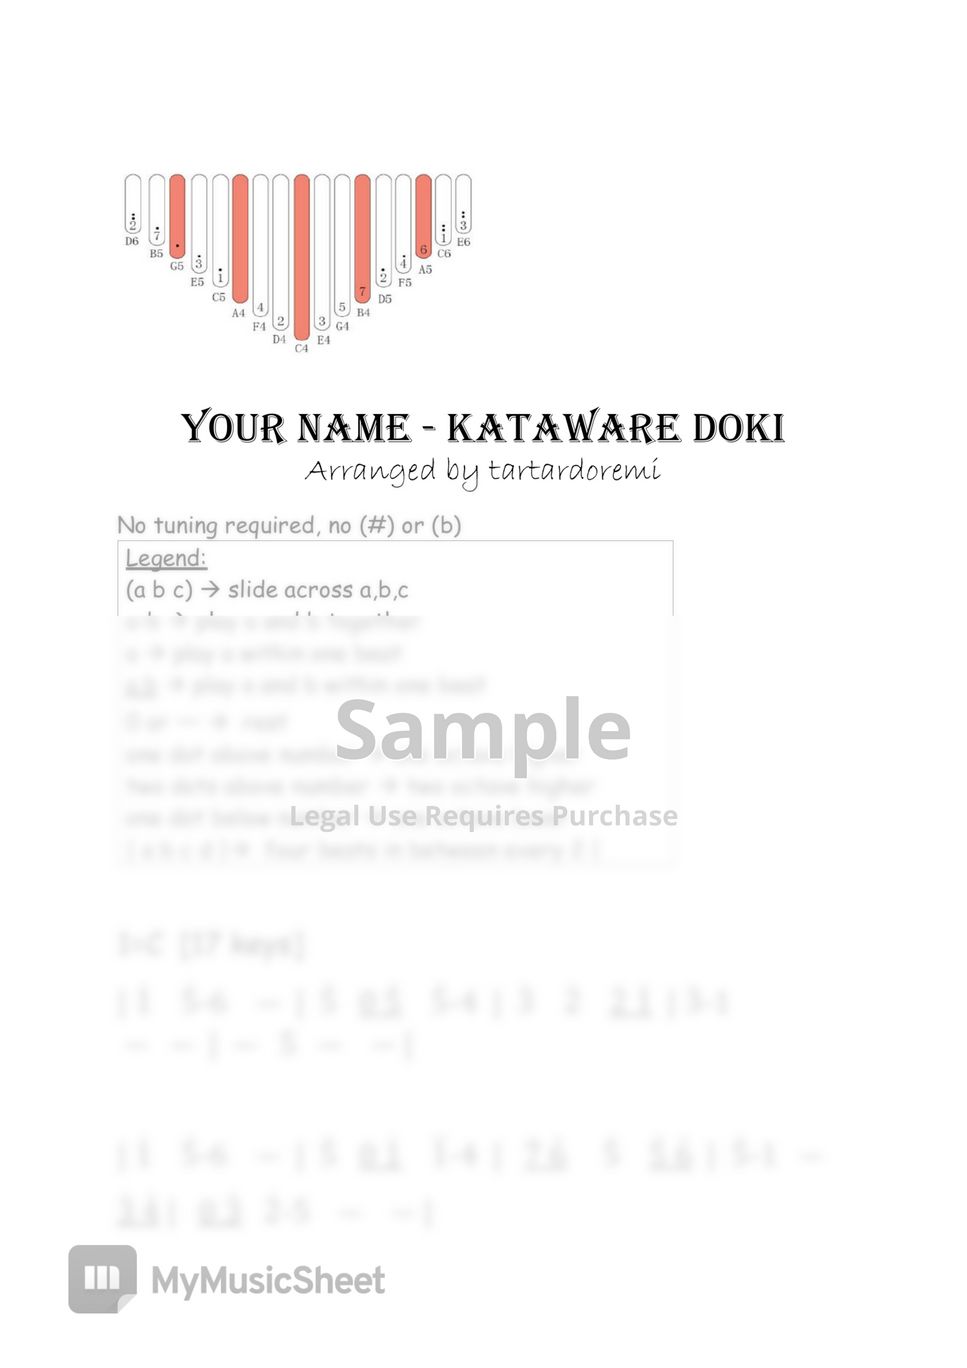 Your Name - Kataware Doki [Radwimps] by tartardoremi kalimba